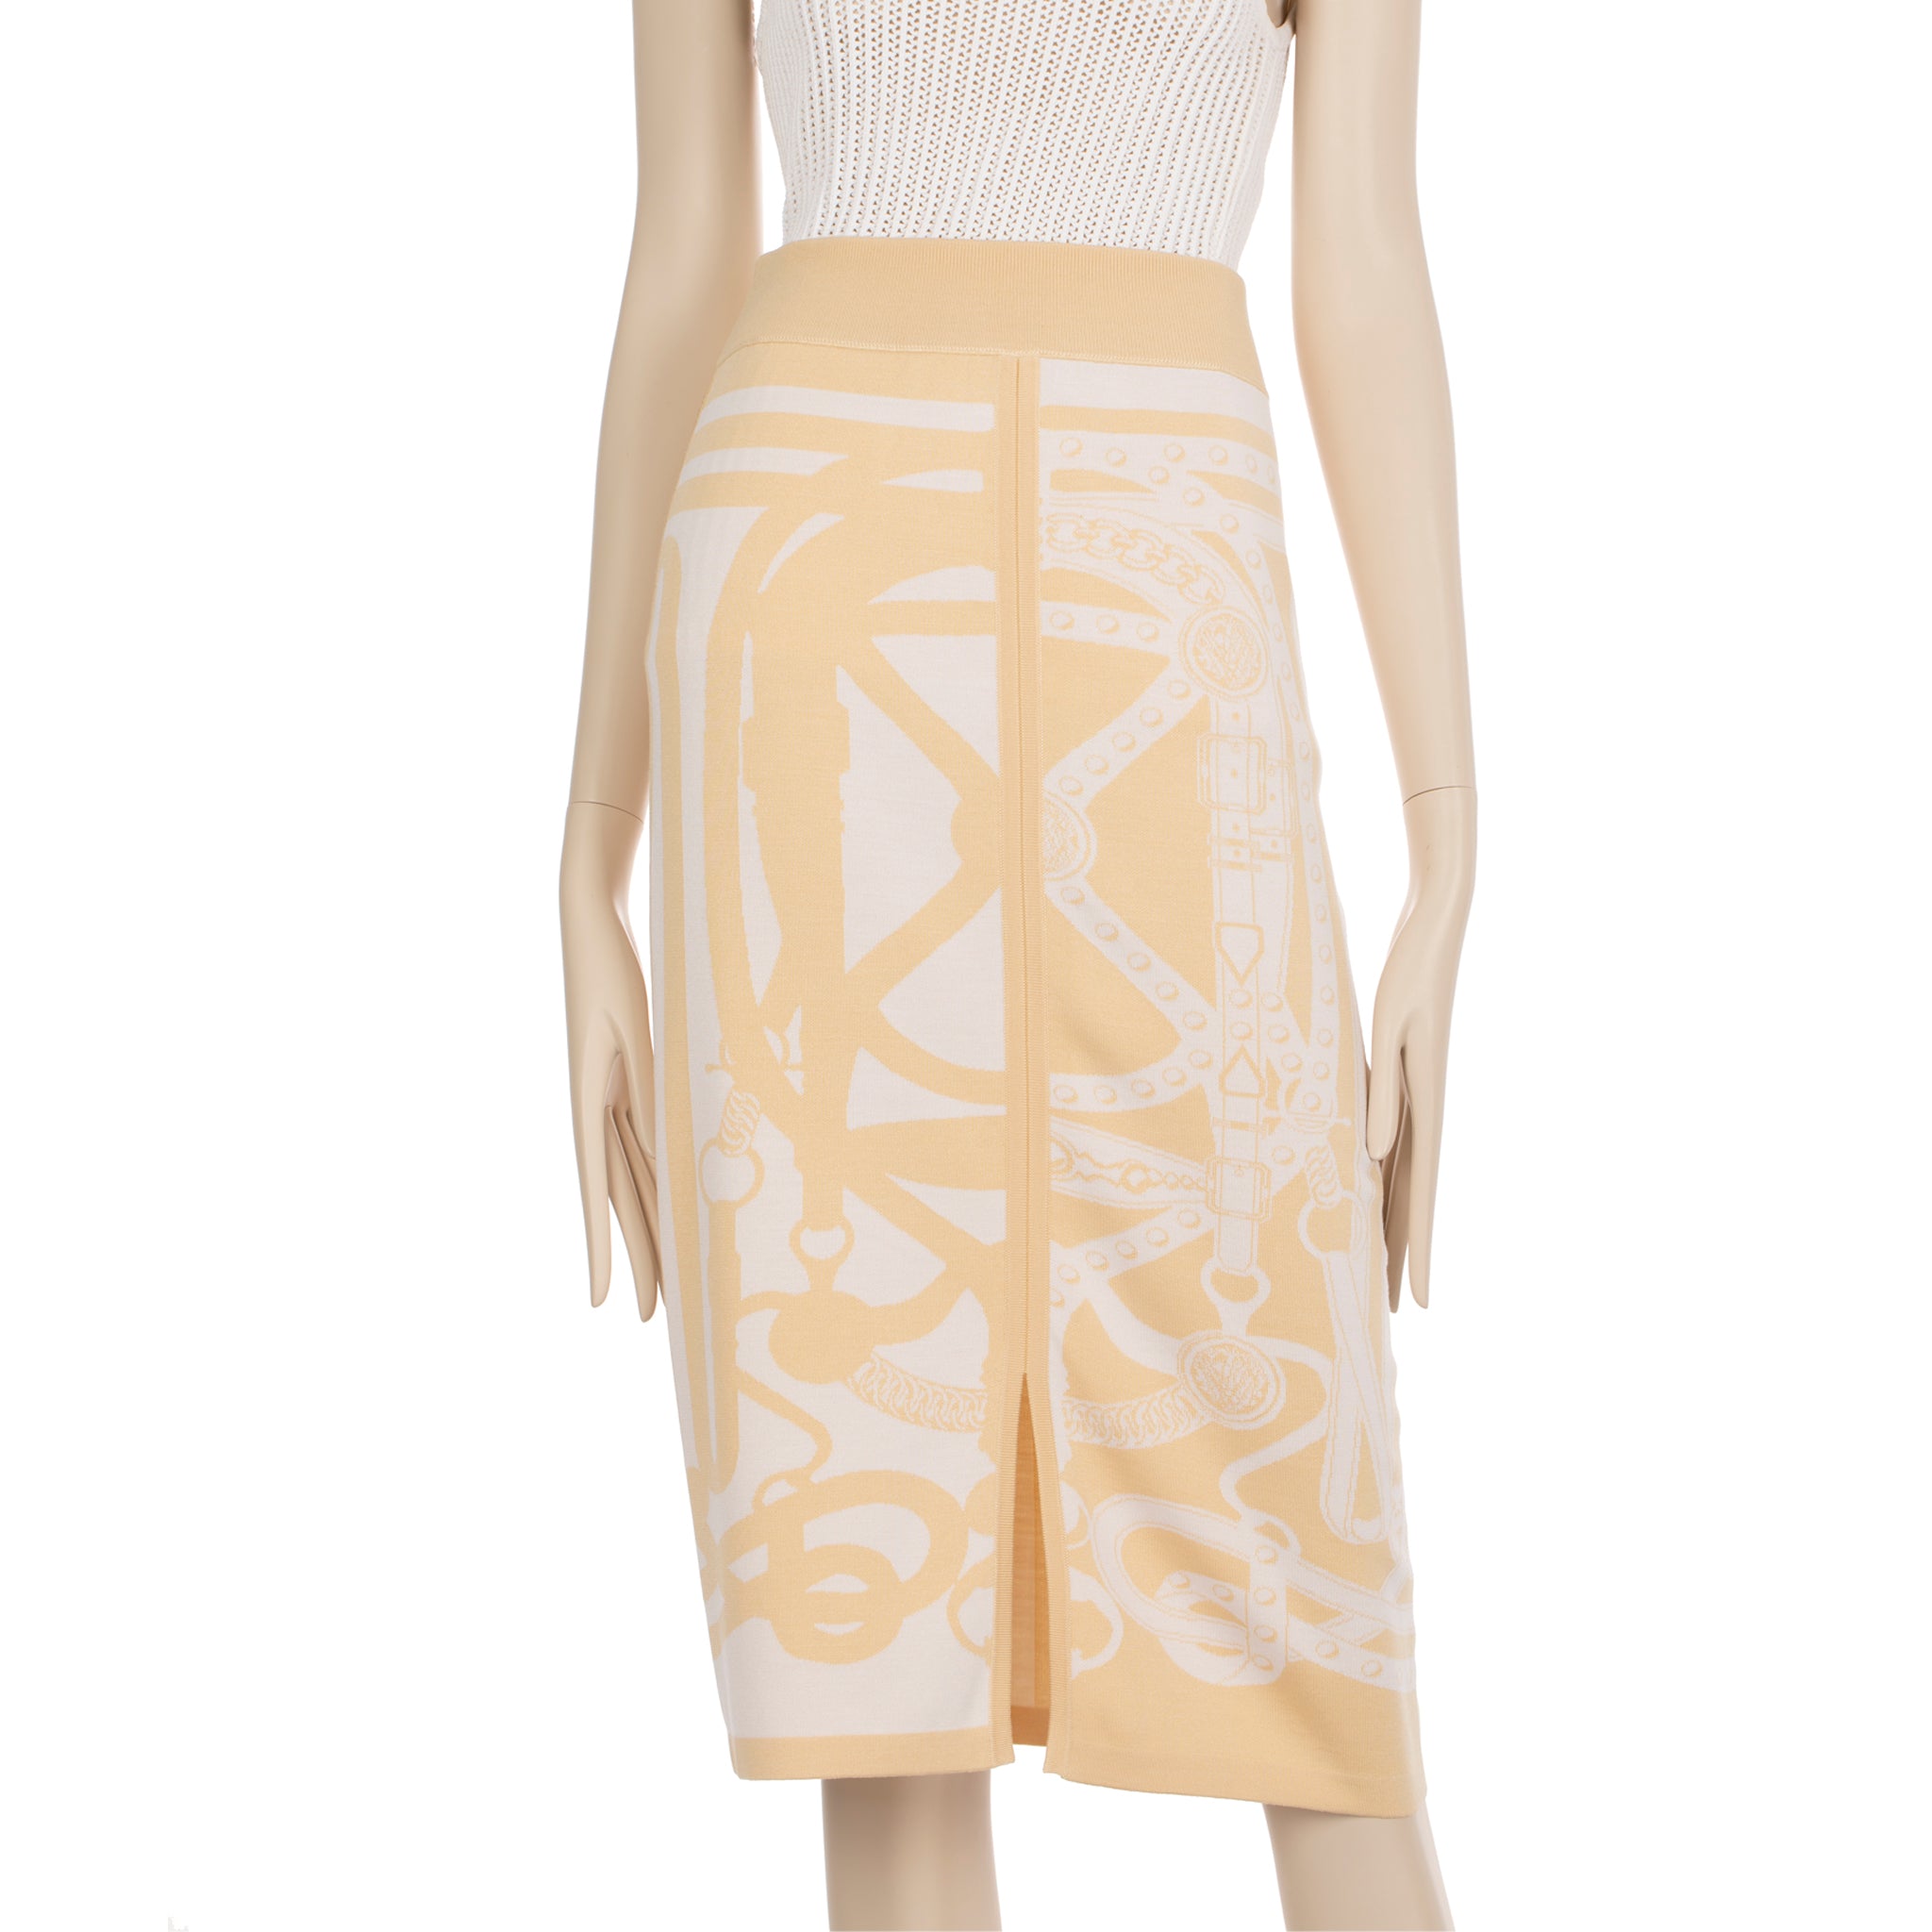 Hermes Long Skirt Knit Ivory & Beige 40 FR